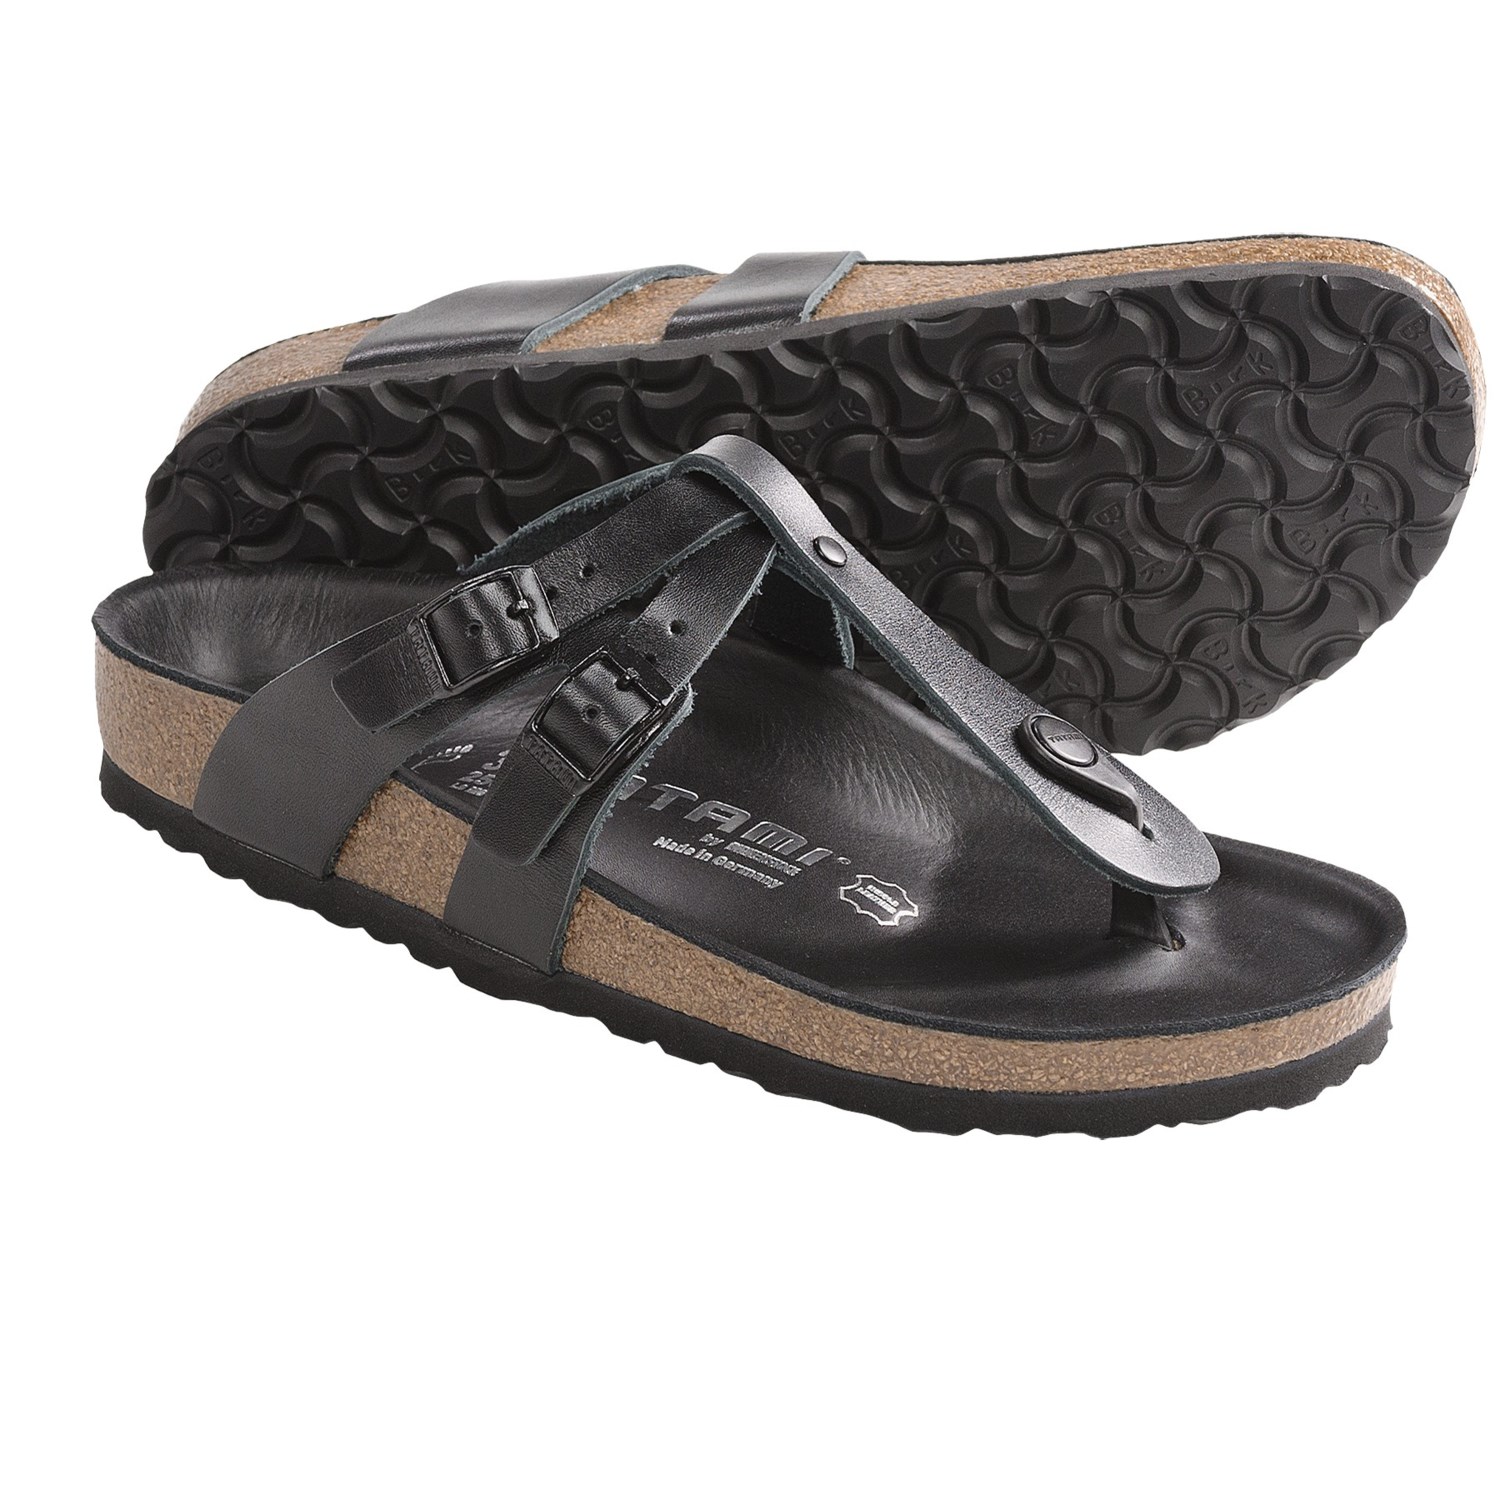 Birkenstock Tatami Sandals for Women